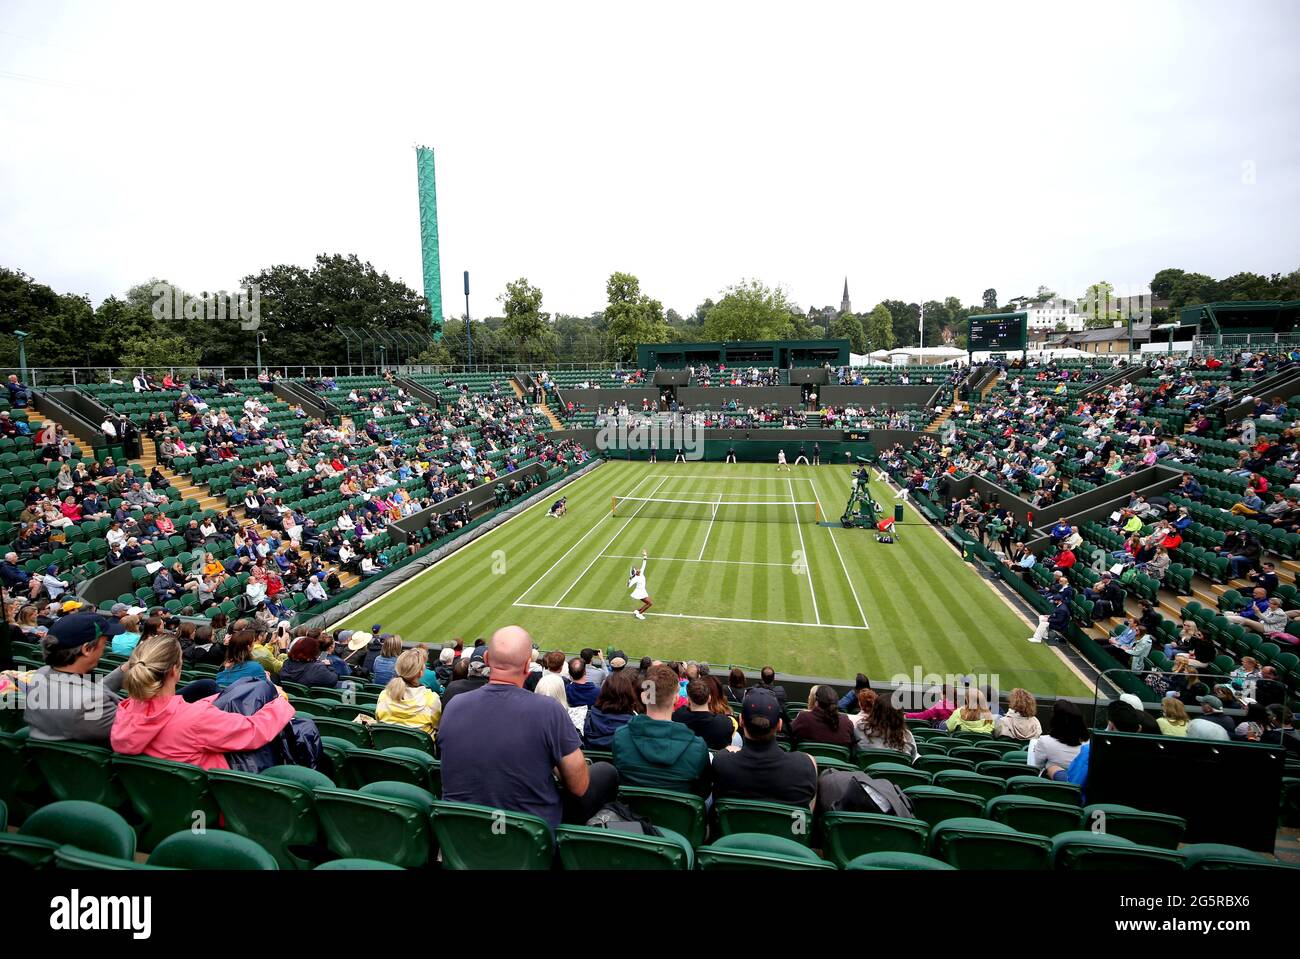 Coco Gauff dient während ihres ersten Damen-Einzelmatches in der ersten Runde gegen die Dame auf dem Platz 2 am zweiten Tag von Wimbledon im All England Lawn Tennis und Croquet Club in Wimbledon. Bilddatum: Dienstag, 29. Juni 2021. Stockfoto